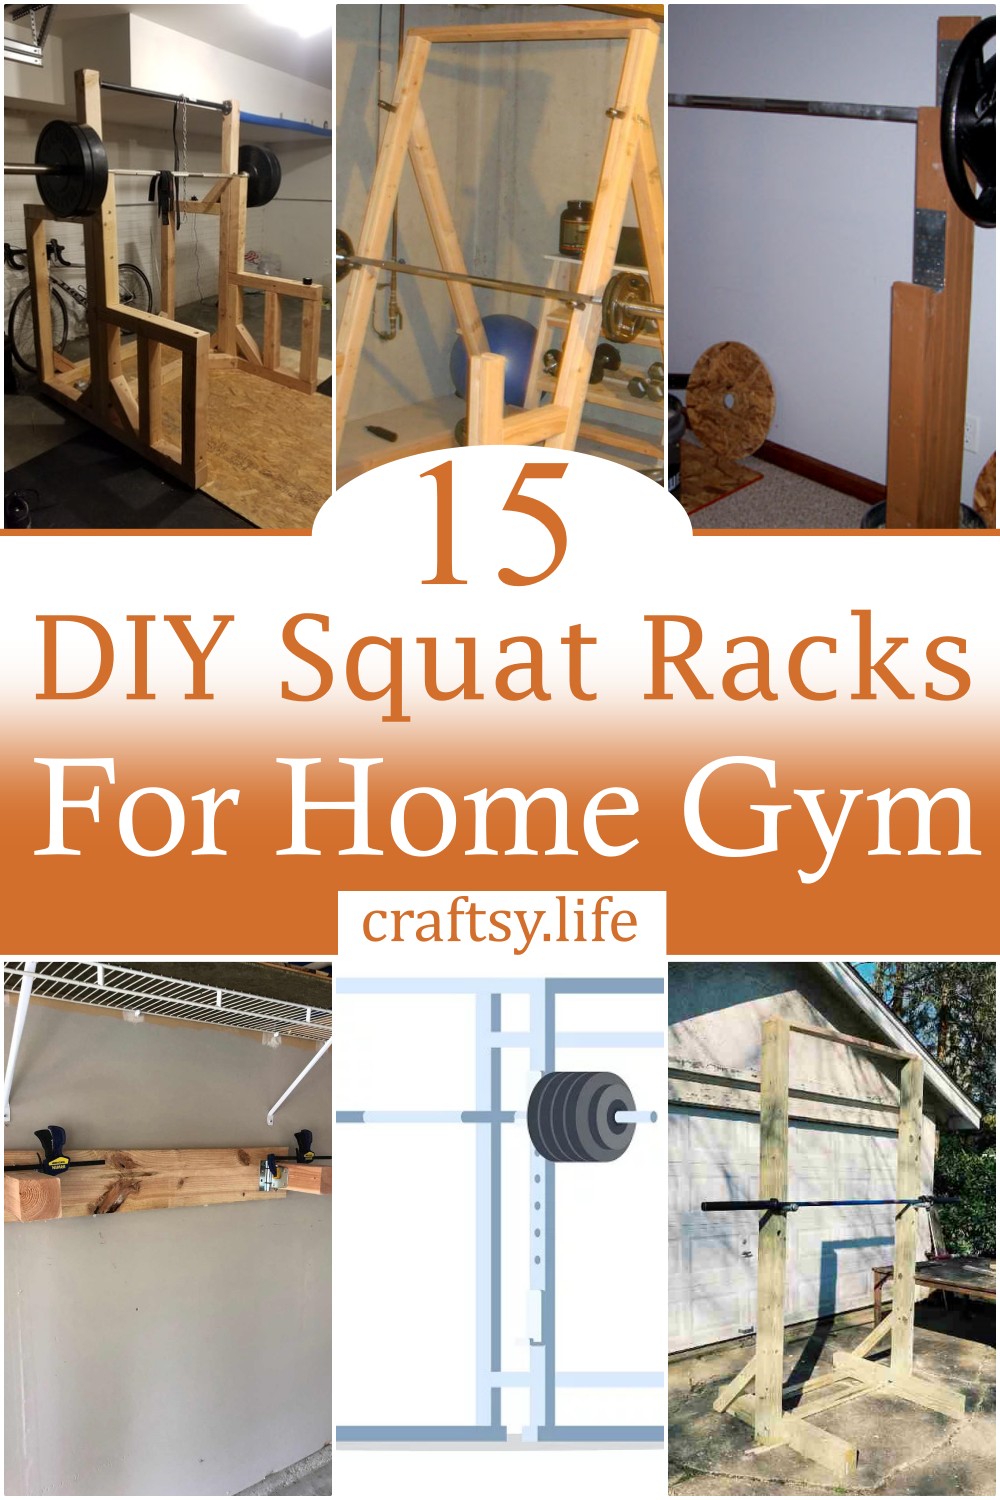 DIY Squat Racks For Home Gym